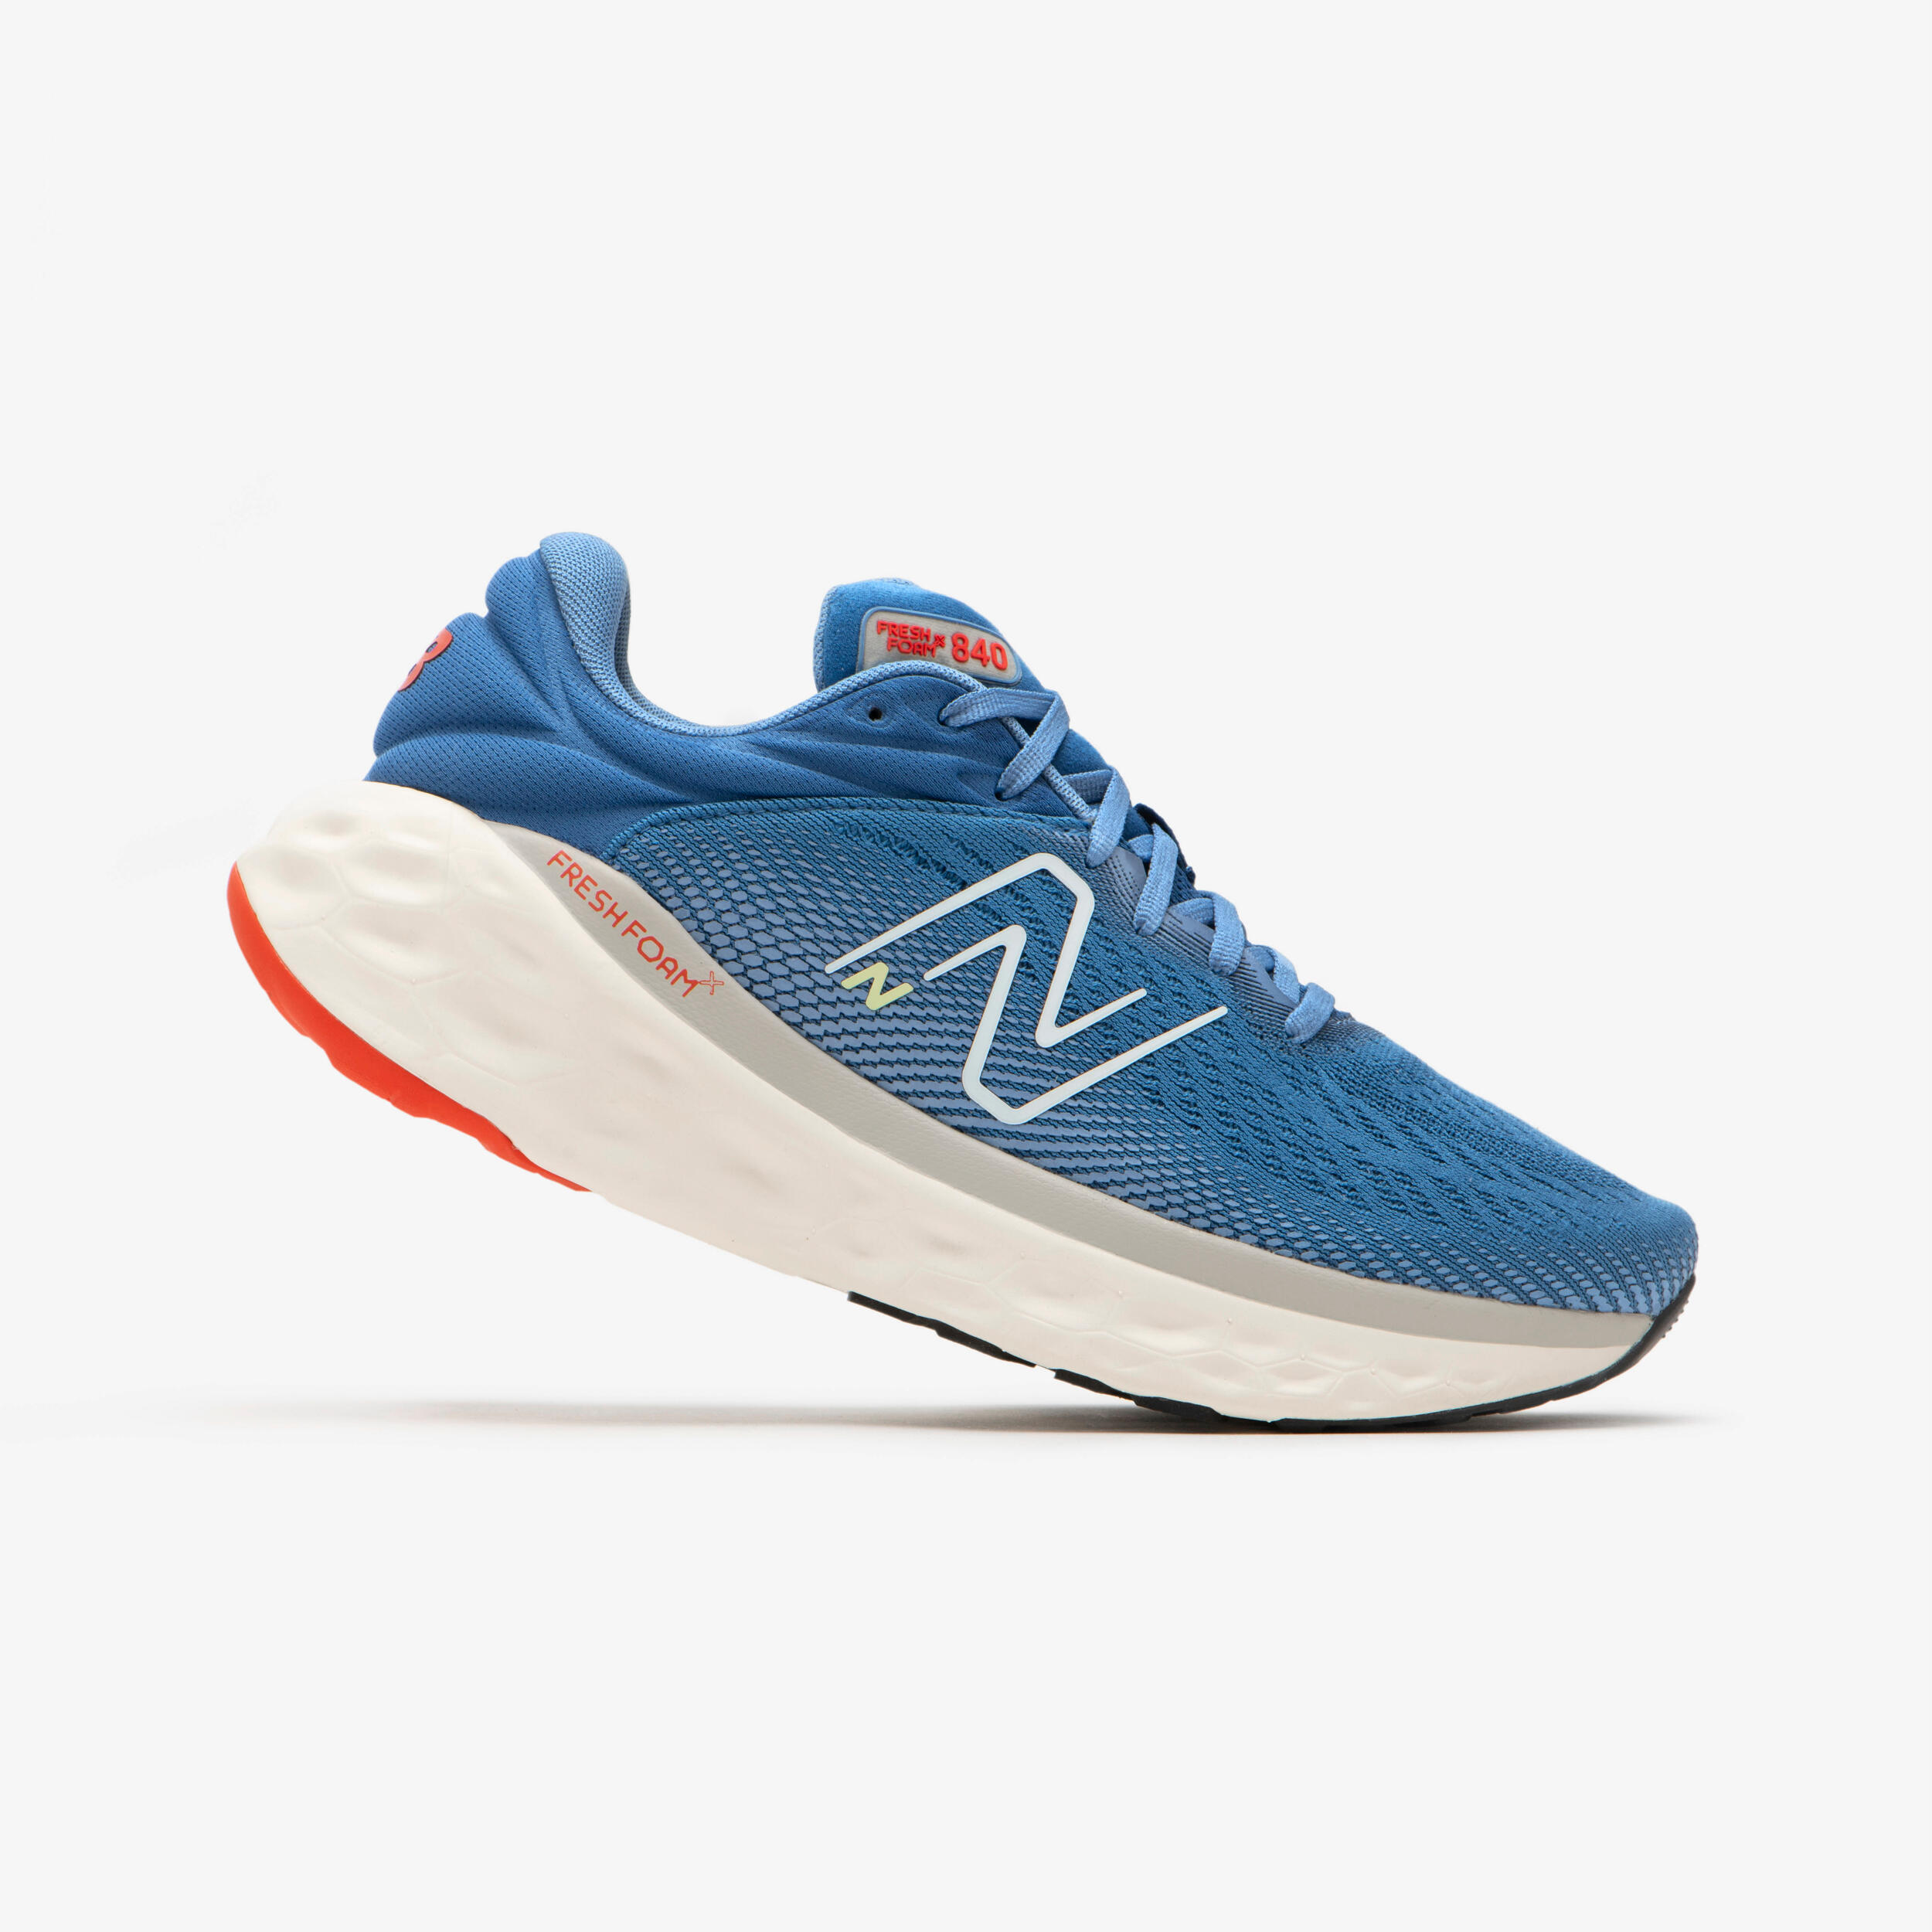 New Balance Men's 840 Running Shoes - Blue